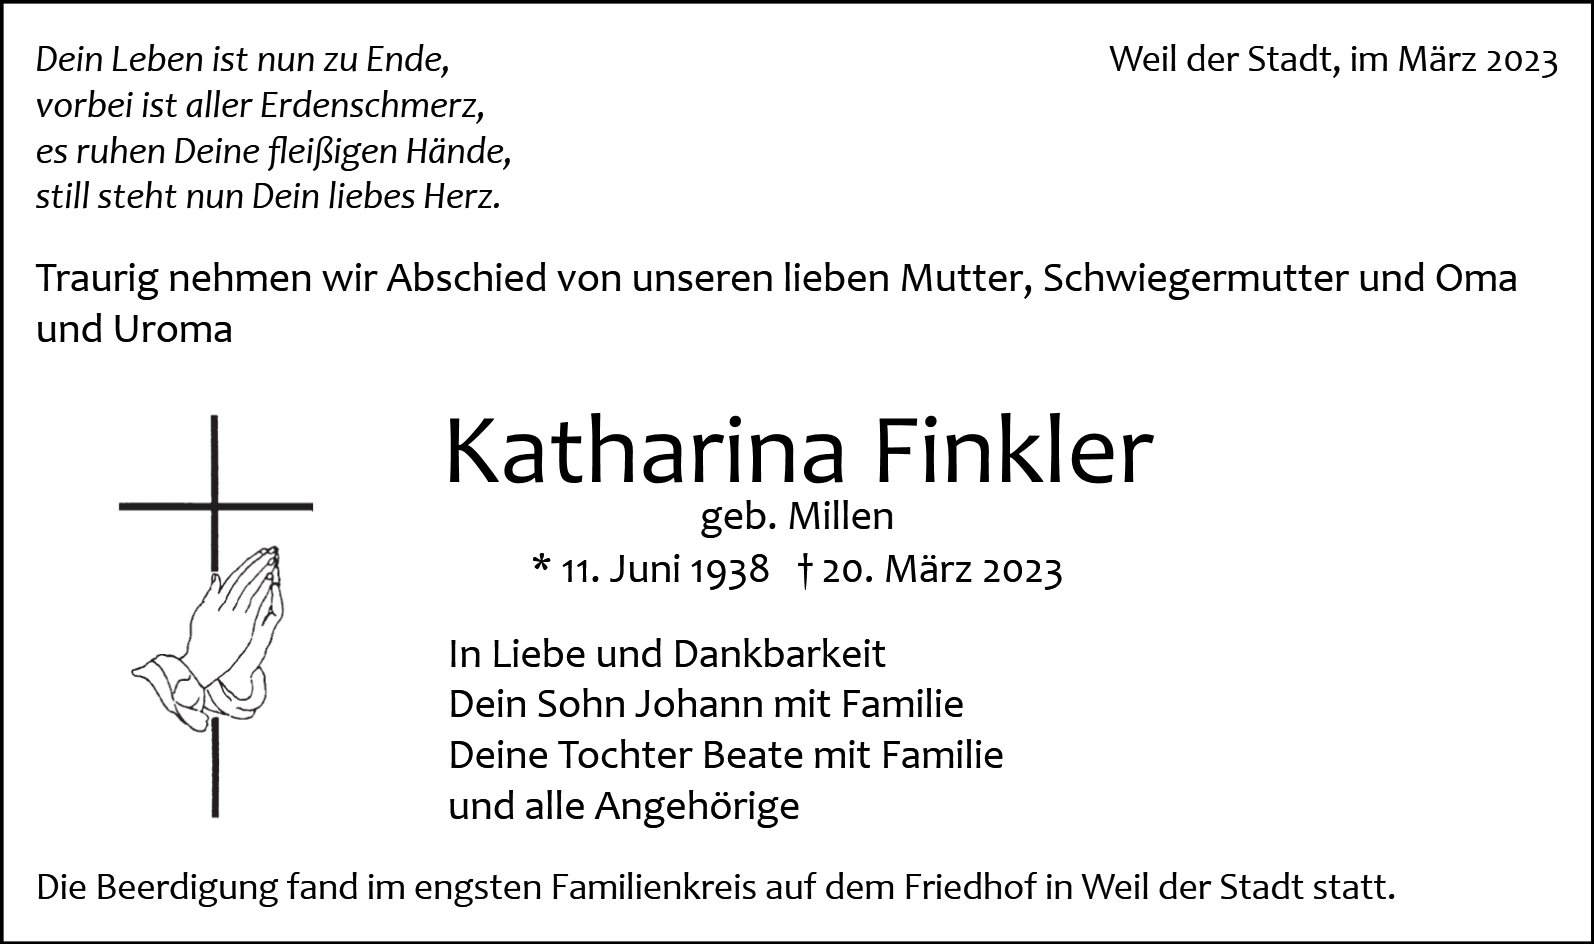 Katharina Finkler